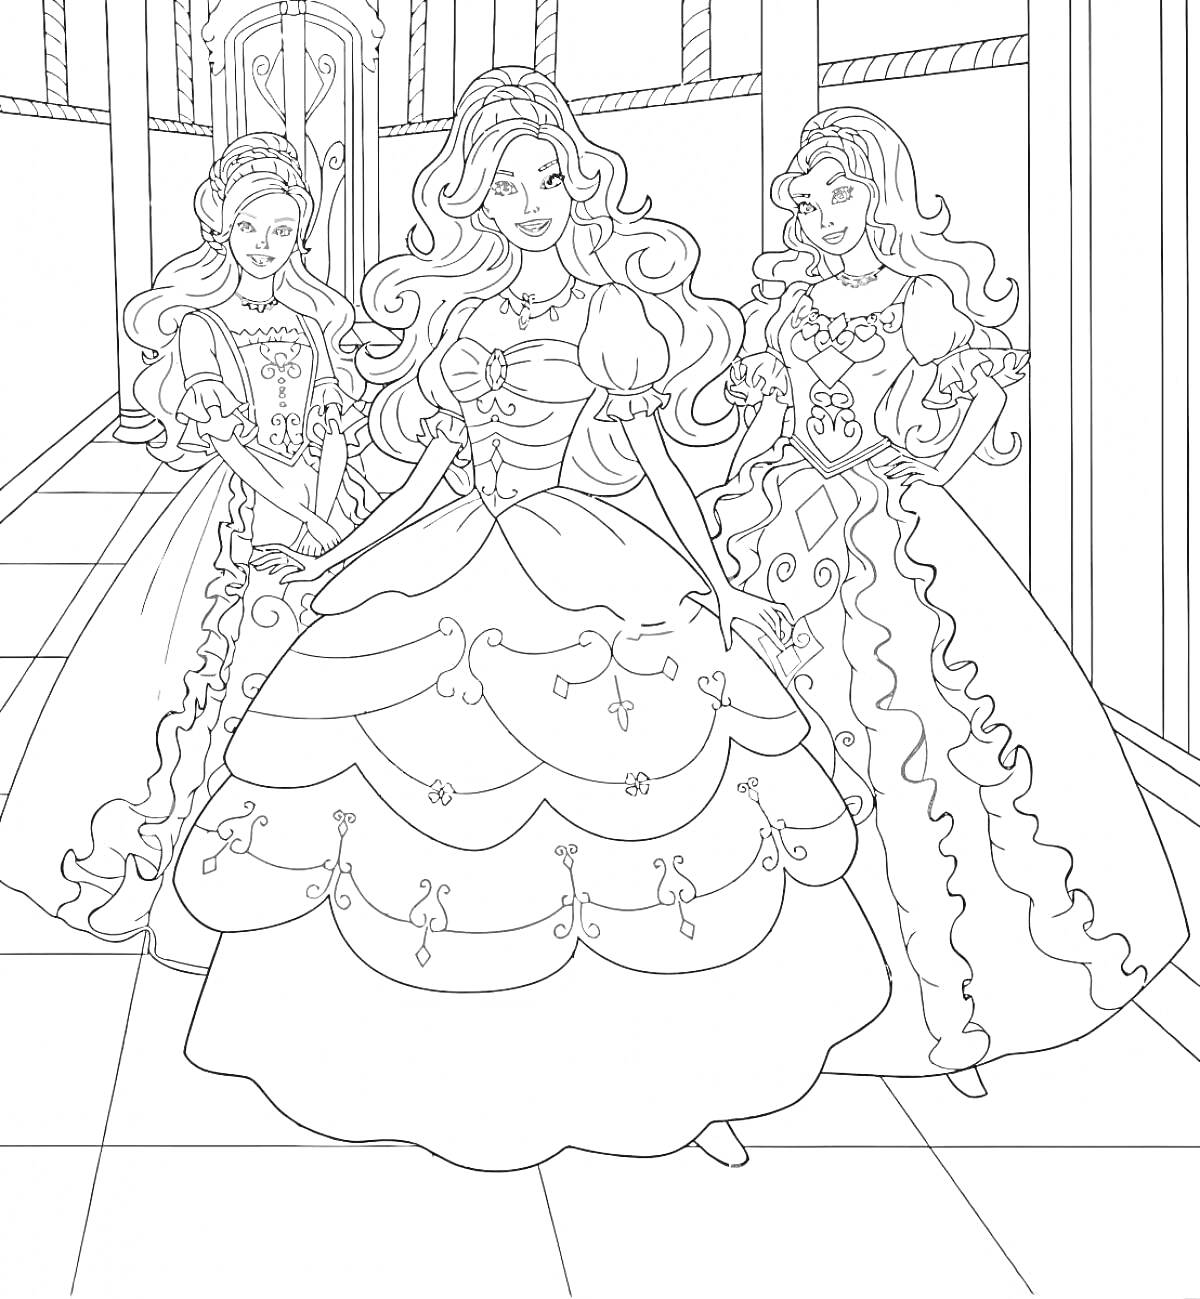  Три куклы Барби в элегантных платьях в коридоре